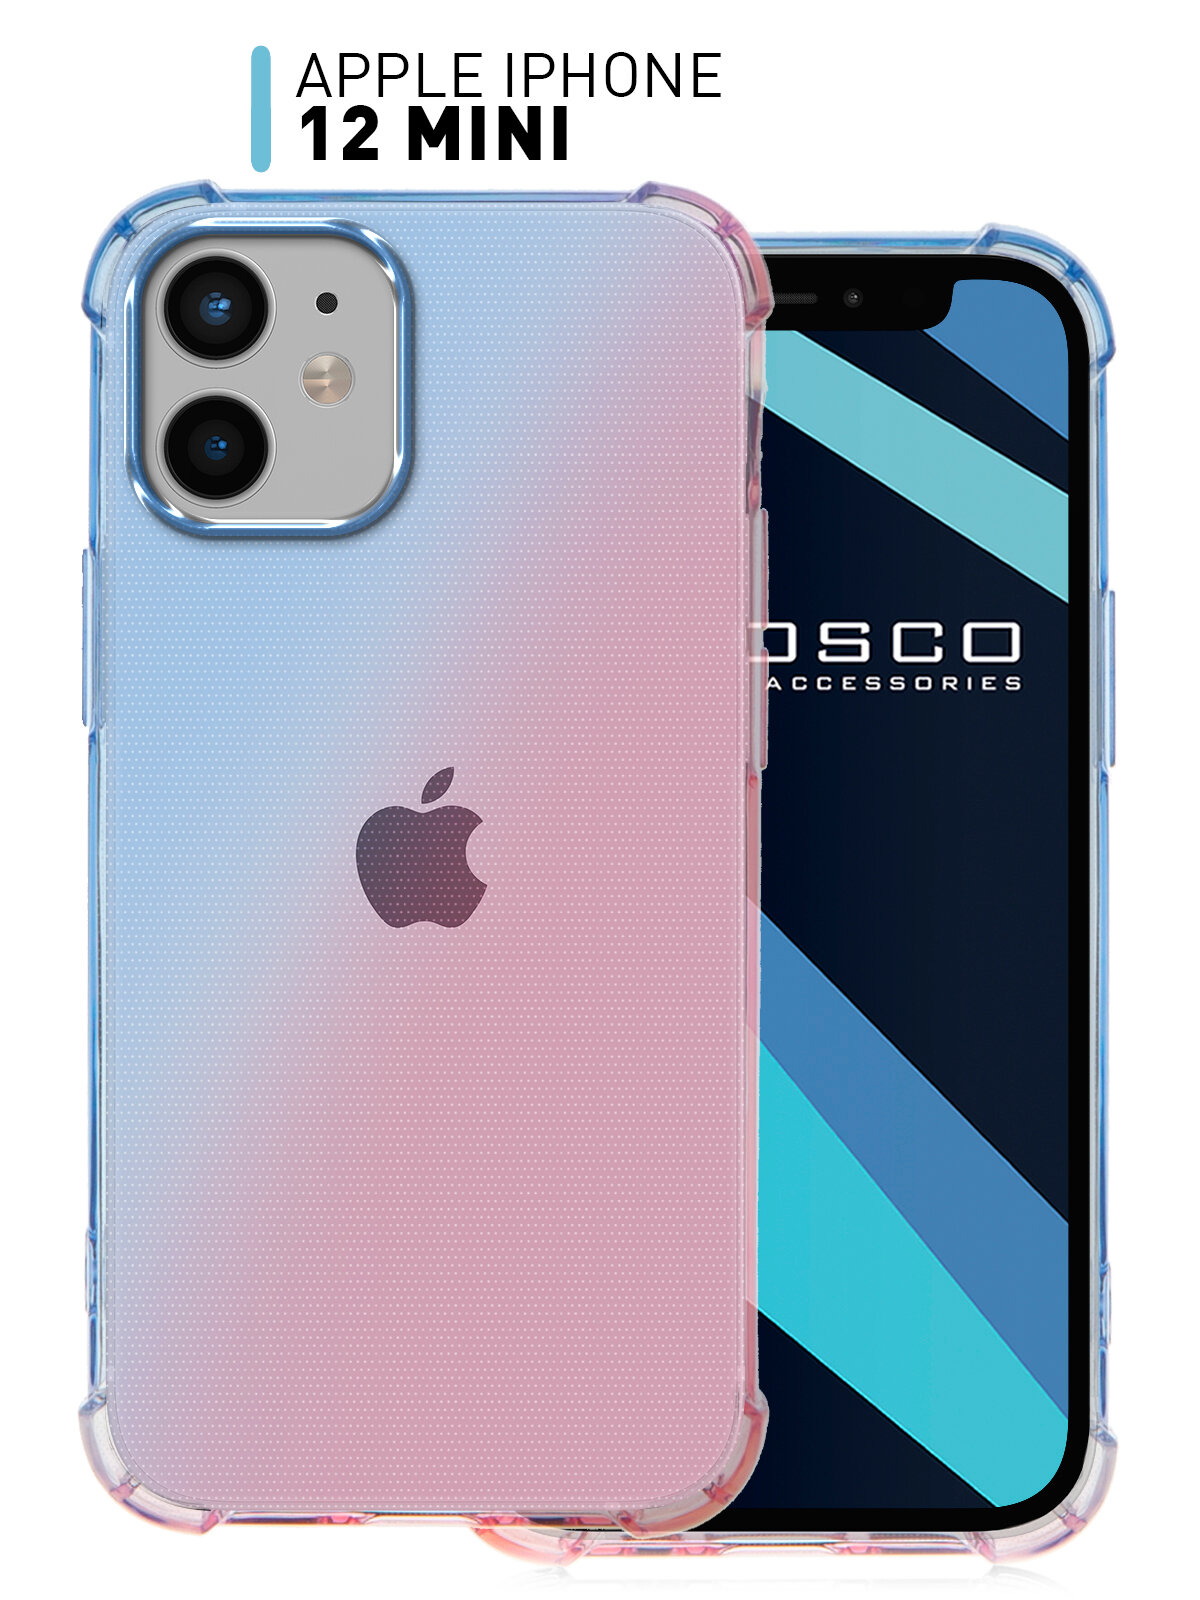 Противоударный чехол ROSCO для Apple iPhone 12 Mini (Айфон 12 мини) силиконовый, усиленные углы, защита камер, прозрачный темно-синий розовый